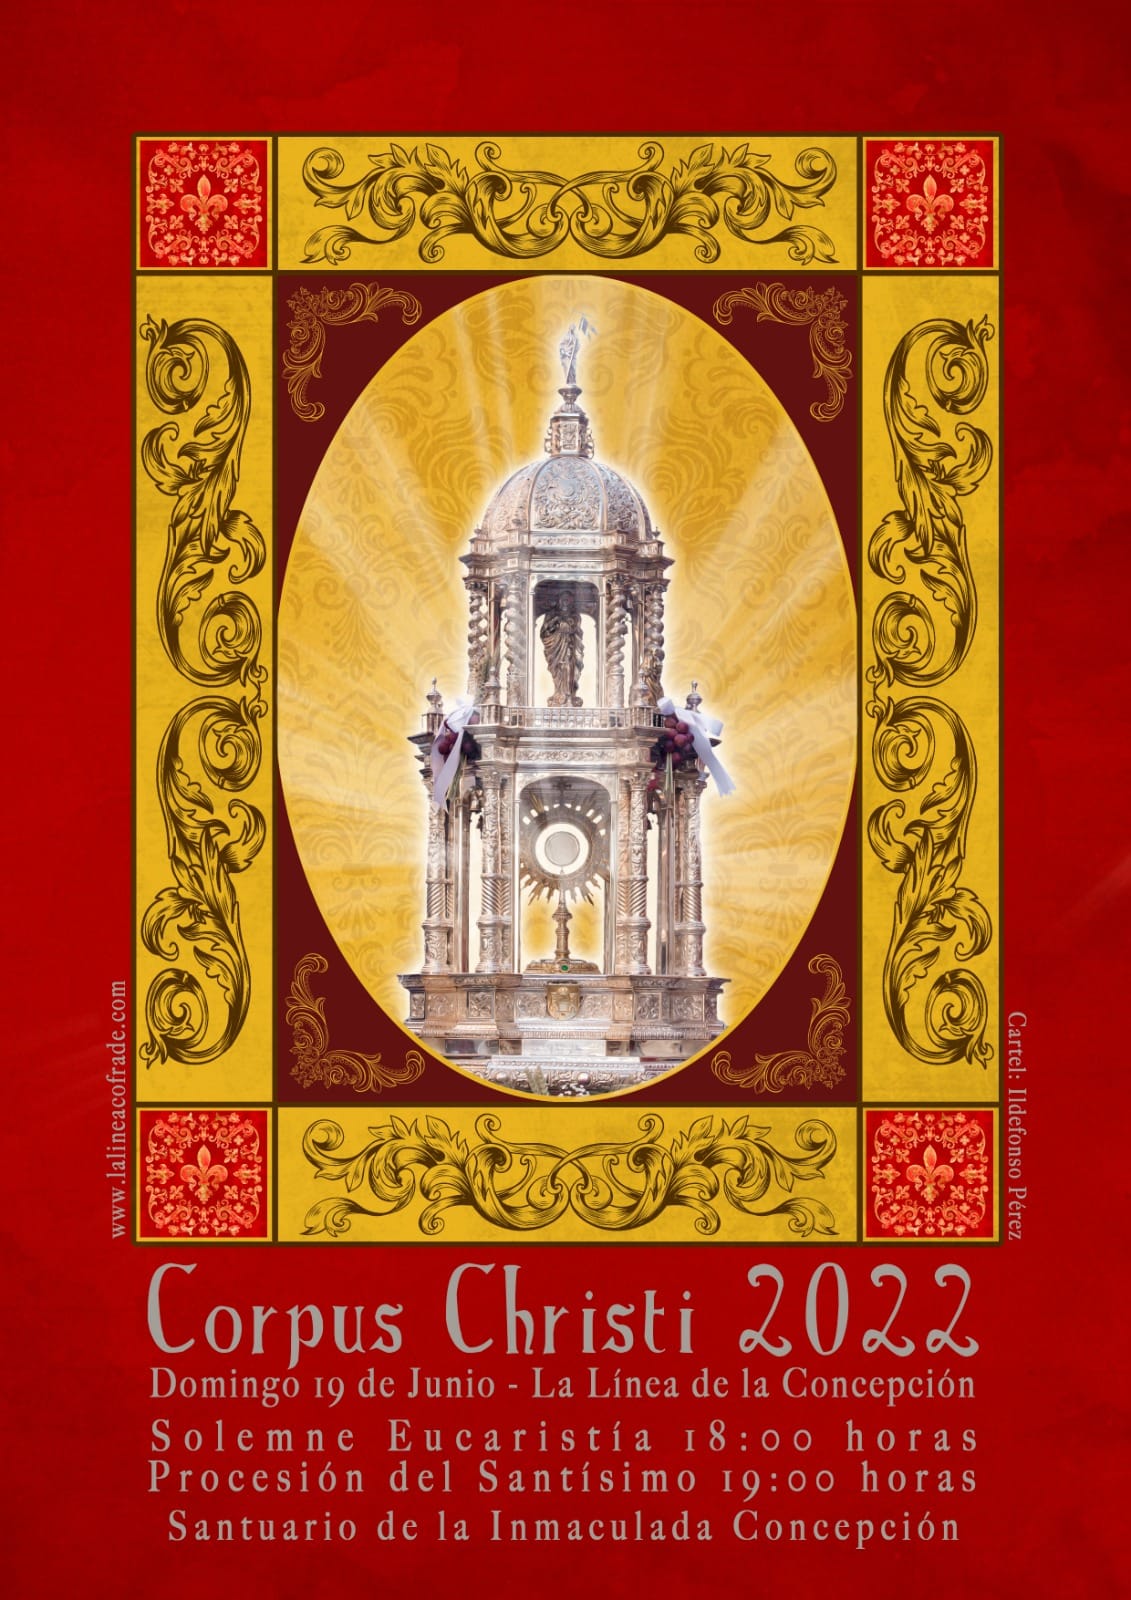 Recorrido y Horario de la Procesión de Corpus Christi de La Línea de la Concepción 2022